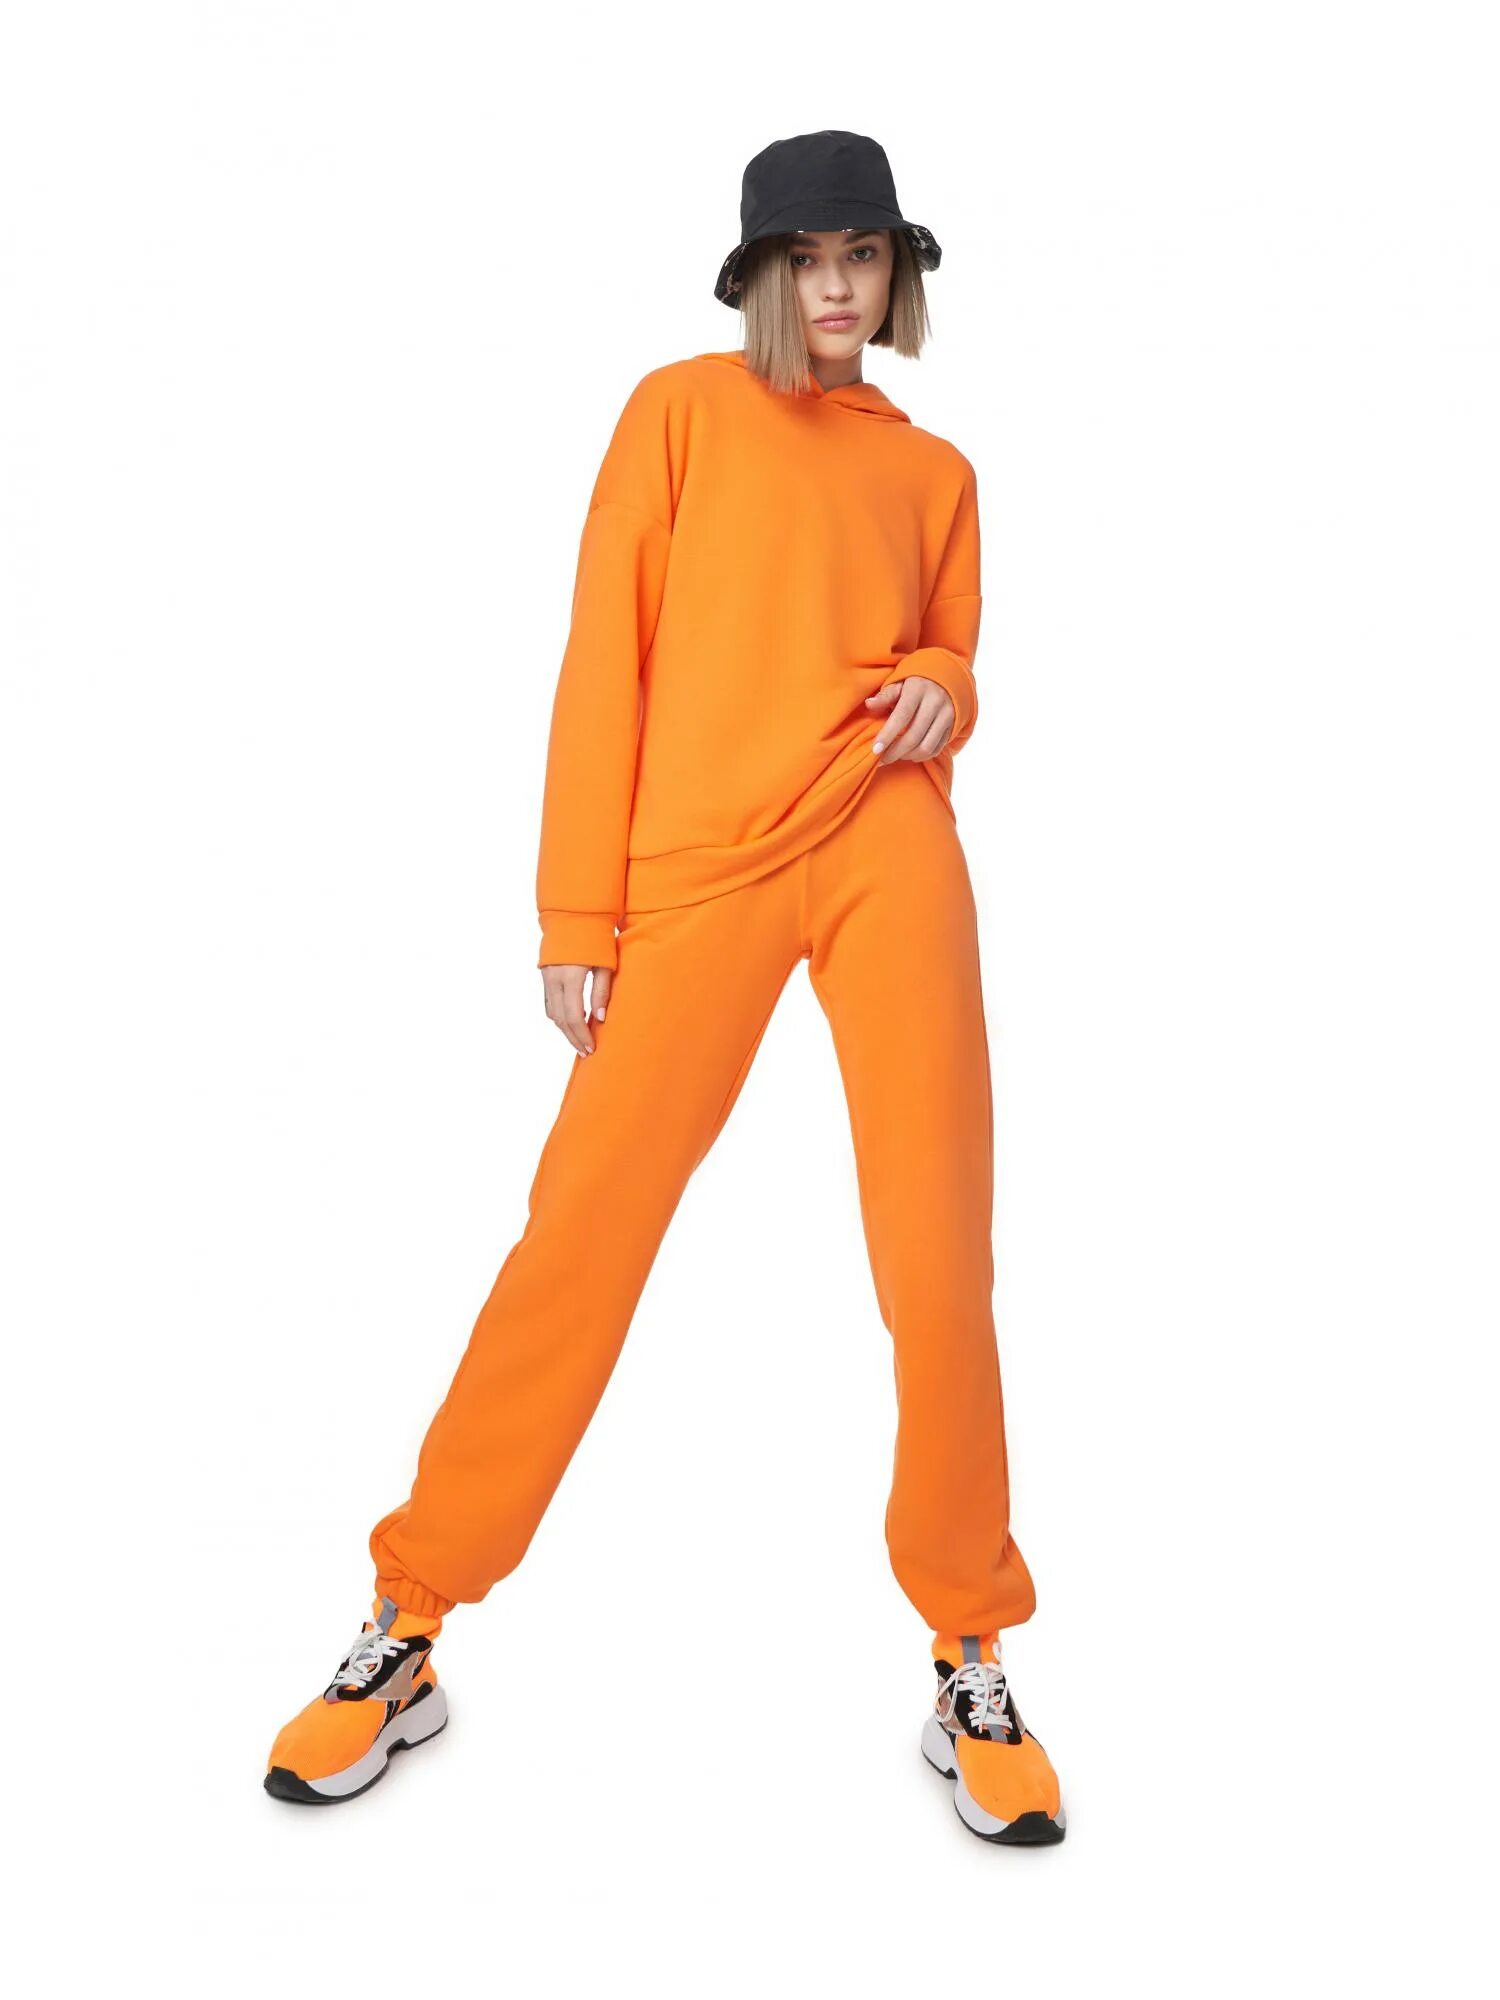 Оранжевый костюм женский. Костюмы оранжевого цвета. Спортивный костюм женский оранжевого цвета.